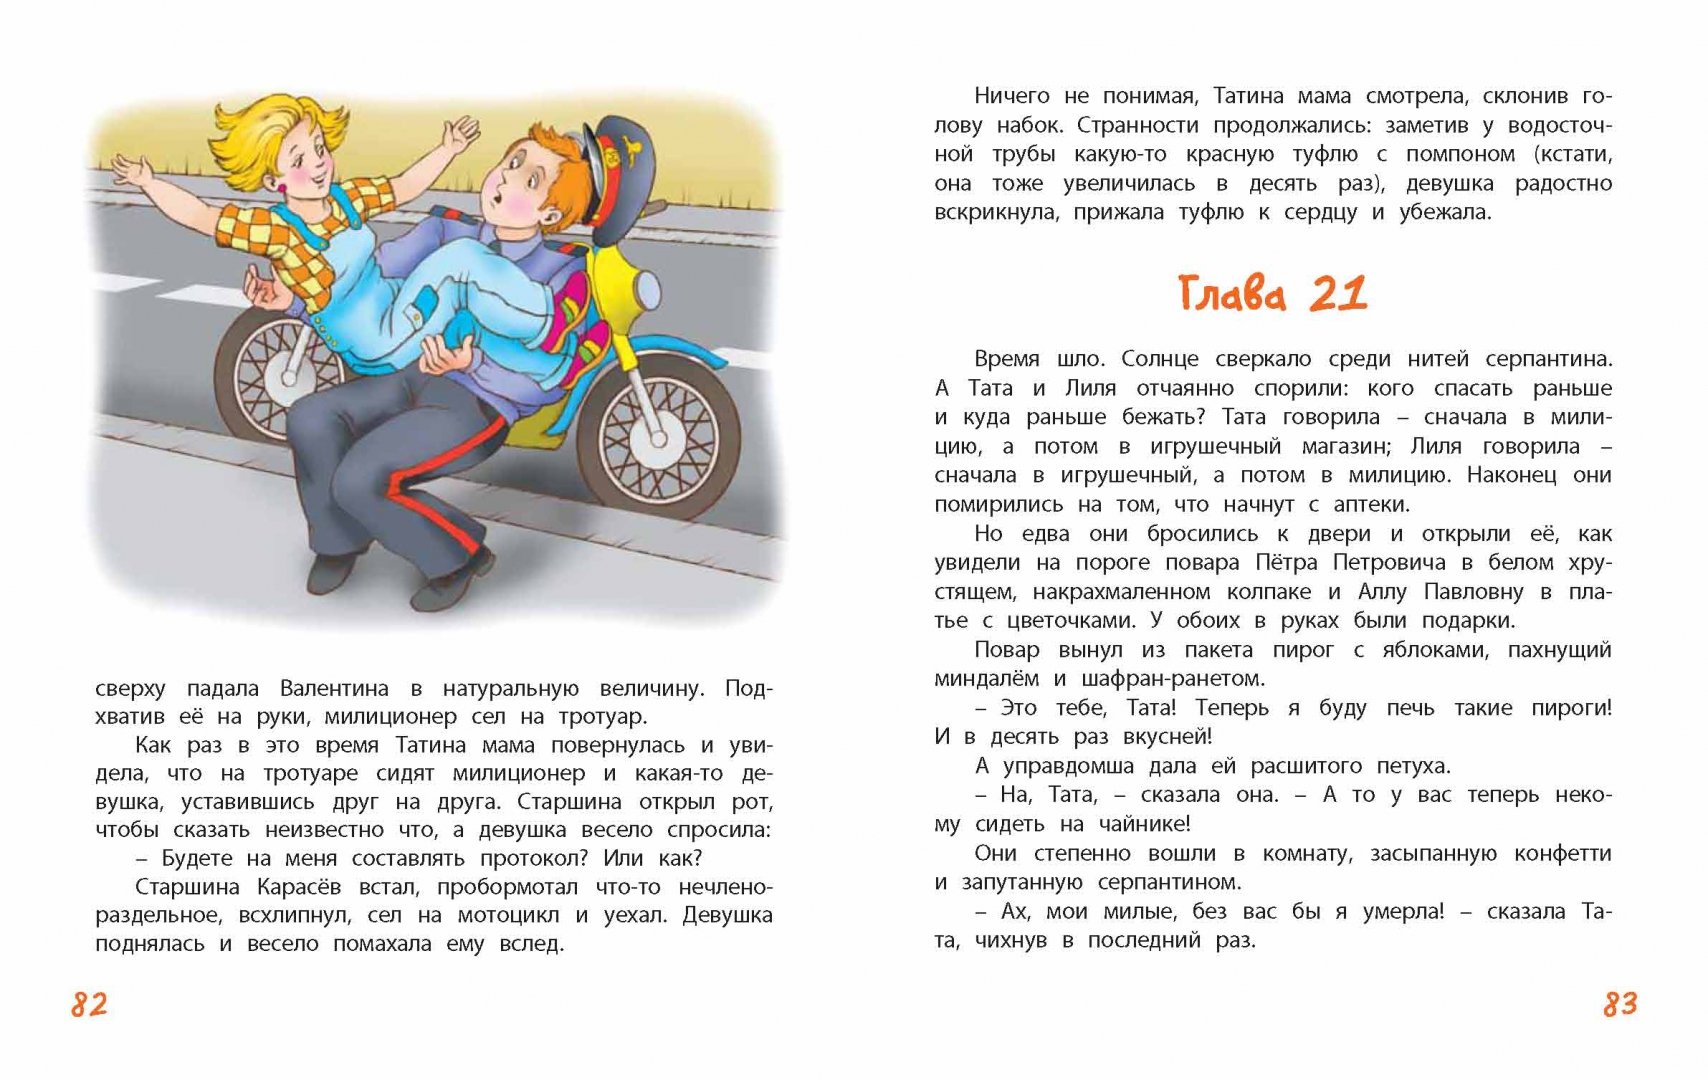 Иллюстрация 16 из 26 для Кукольная комедия - Виткович, Ягдфельд | Лабиринт - книги. Источник: Лабиринт